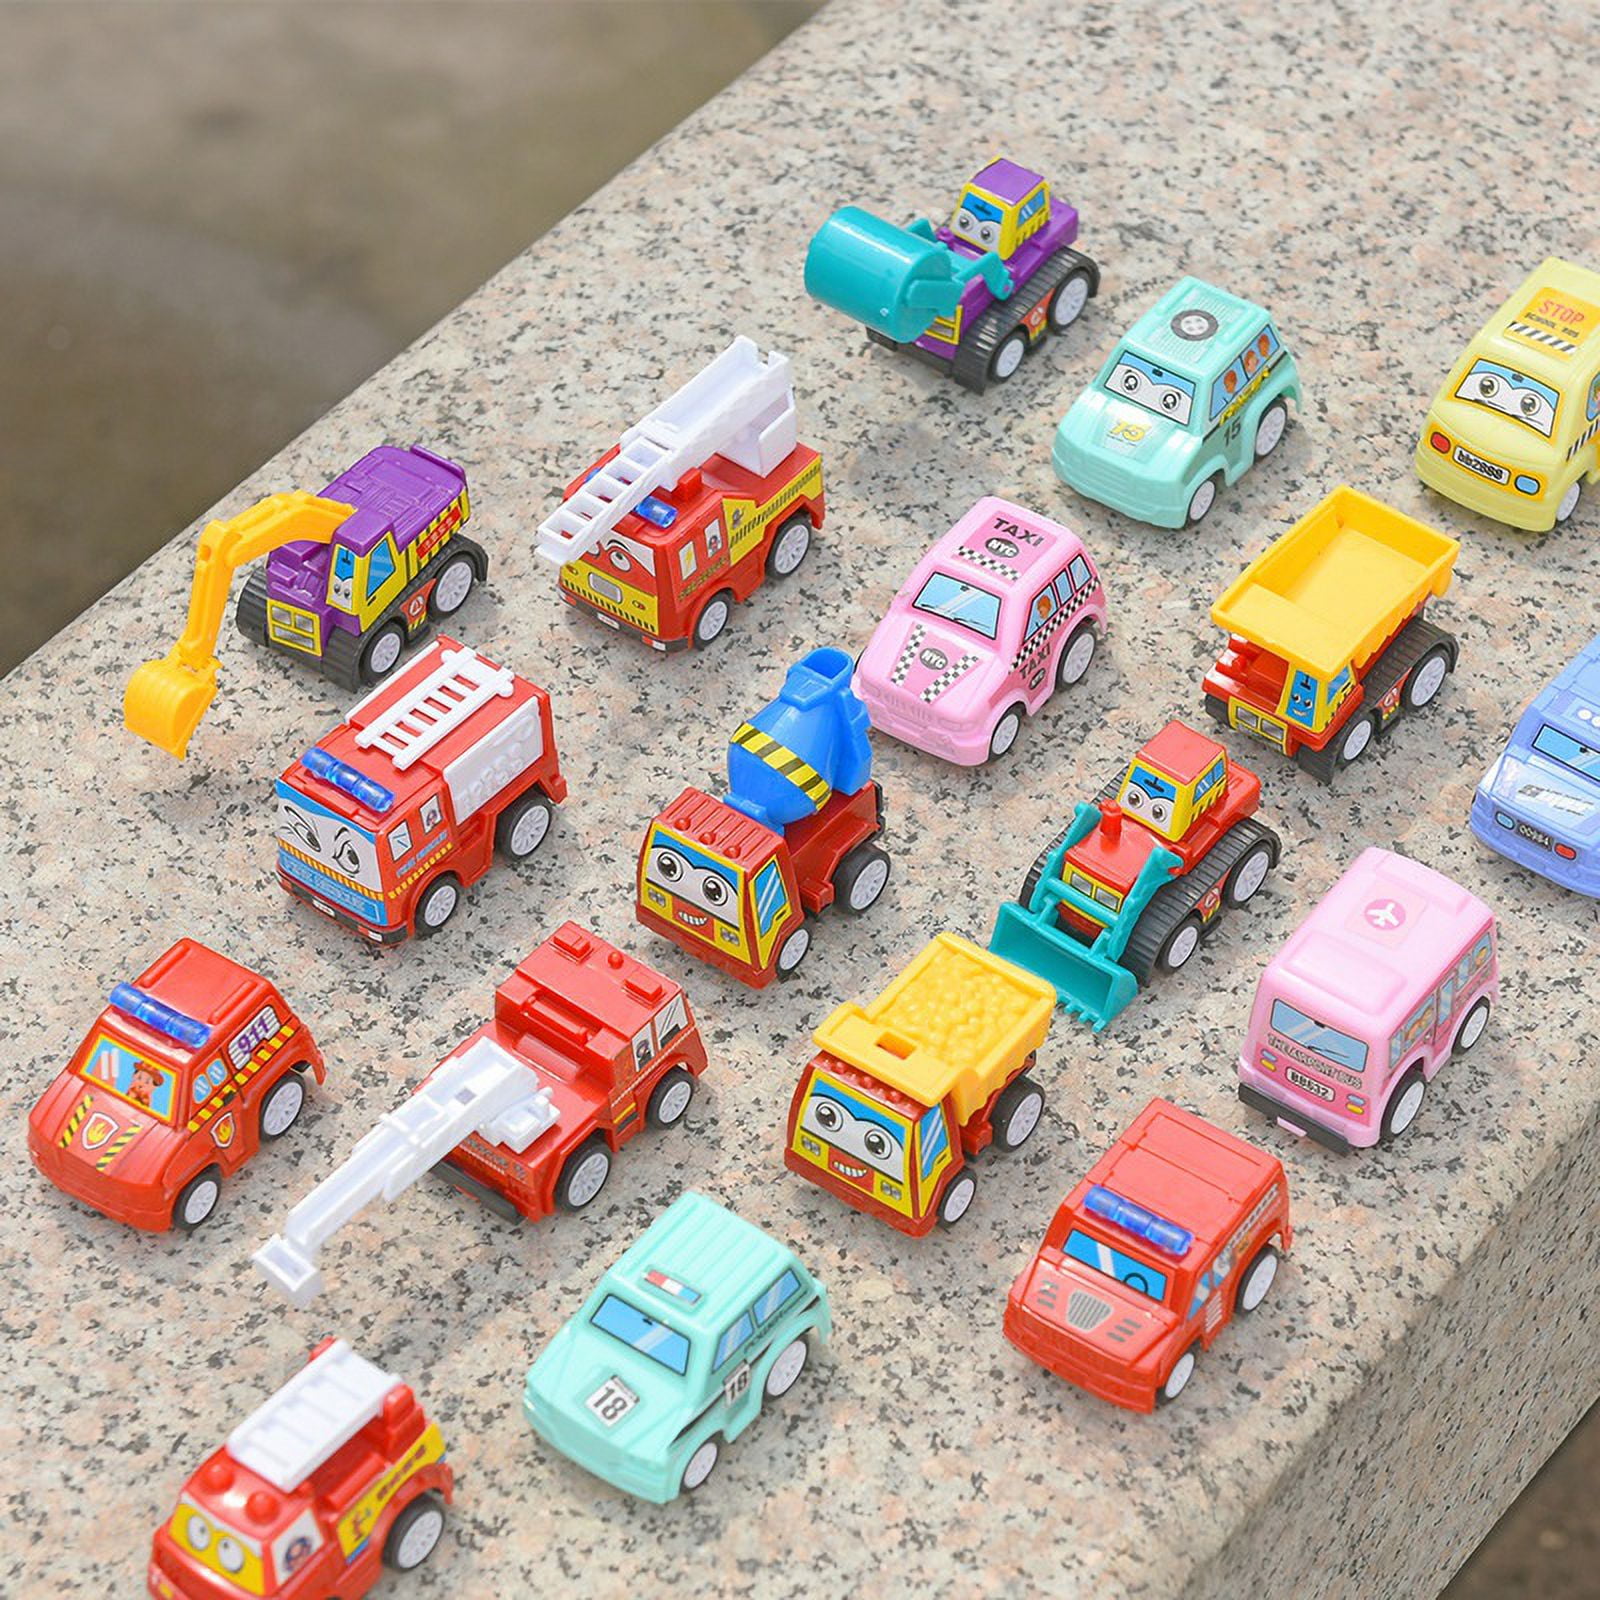 Voiture à partir de 1 2 3 ans - Voiture à enroulement de bébé à partir de 1  an - 4pcs Toy Cars Set For Girls